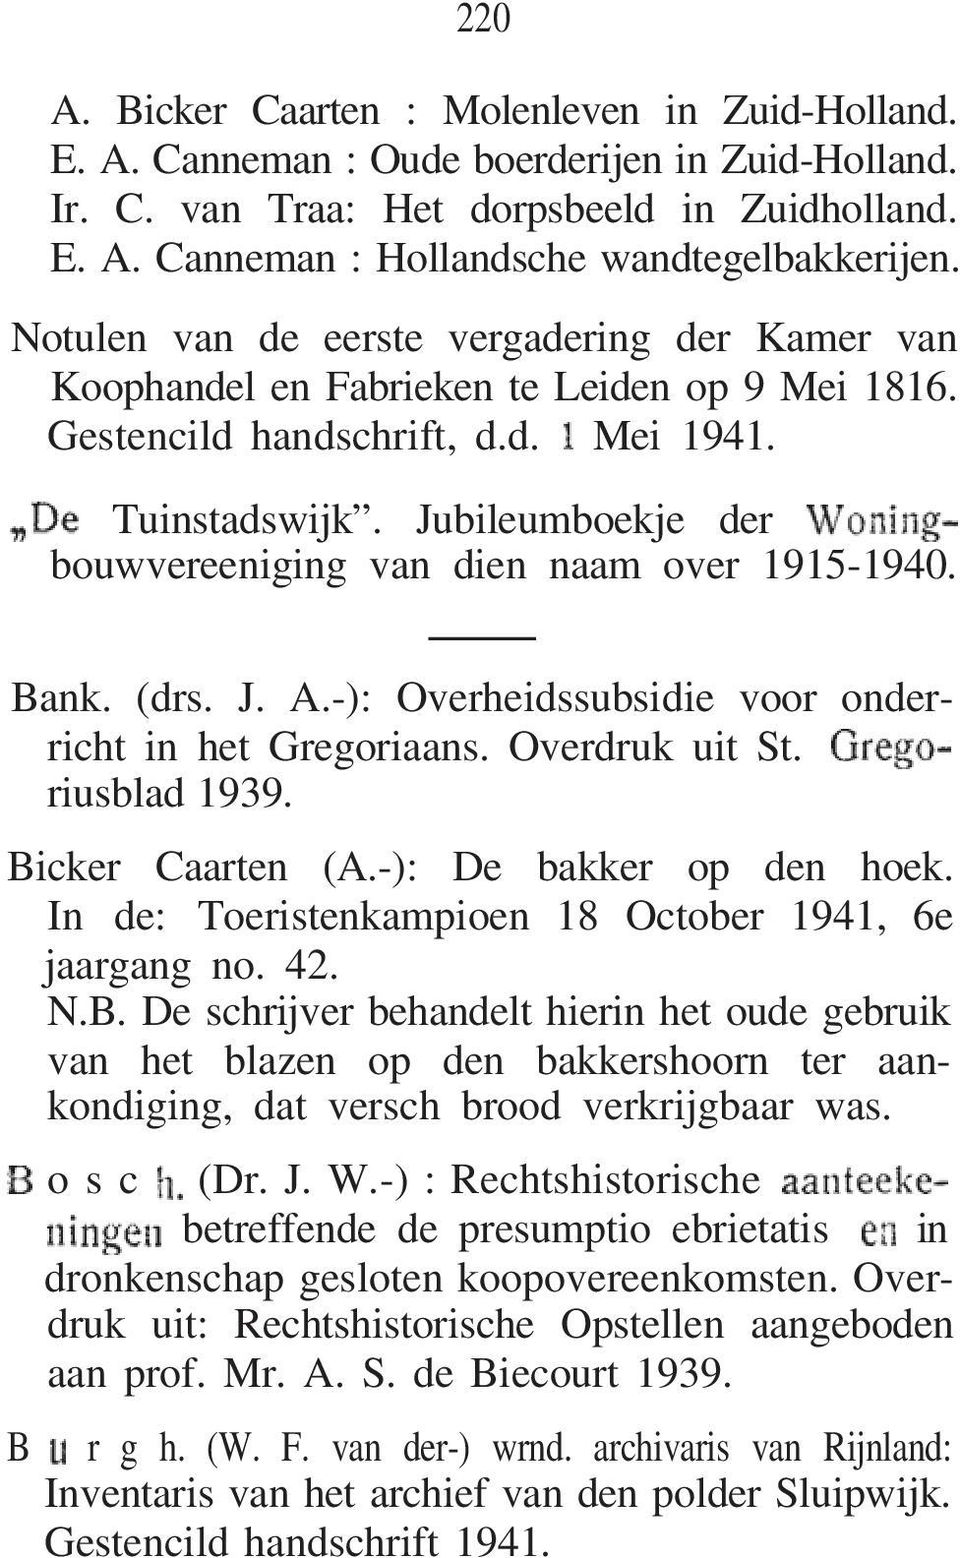 Jubileumboekje der bouwvereeniging van dien naam over 1915-1940. Bank. (drs. J. A.-): Overheidssubsidie voor onderricht in het Gregoriaans. Overdruk uit St. riusblad 1939. Bicker Caarten (A.